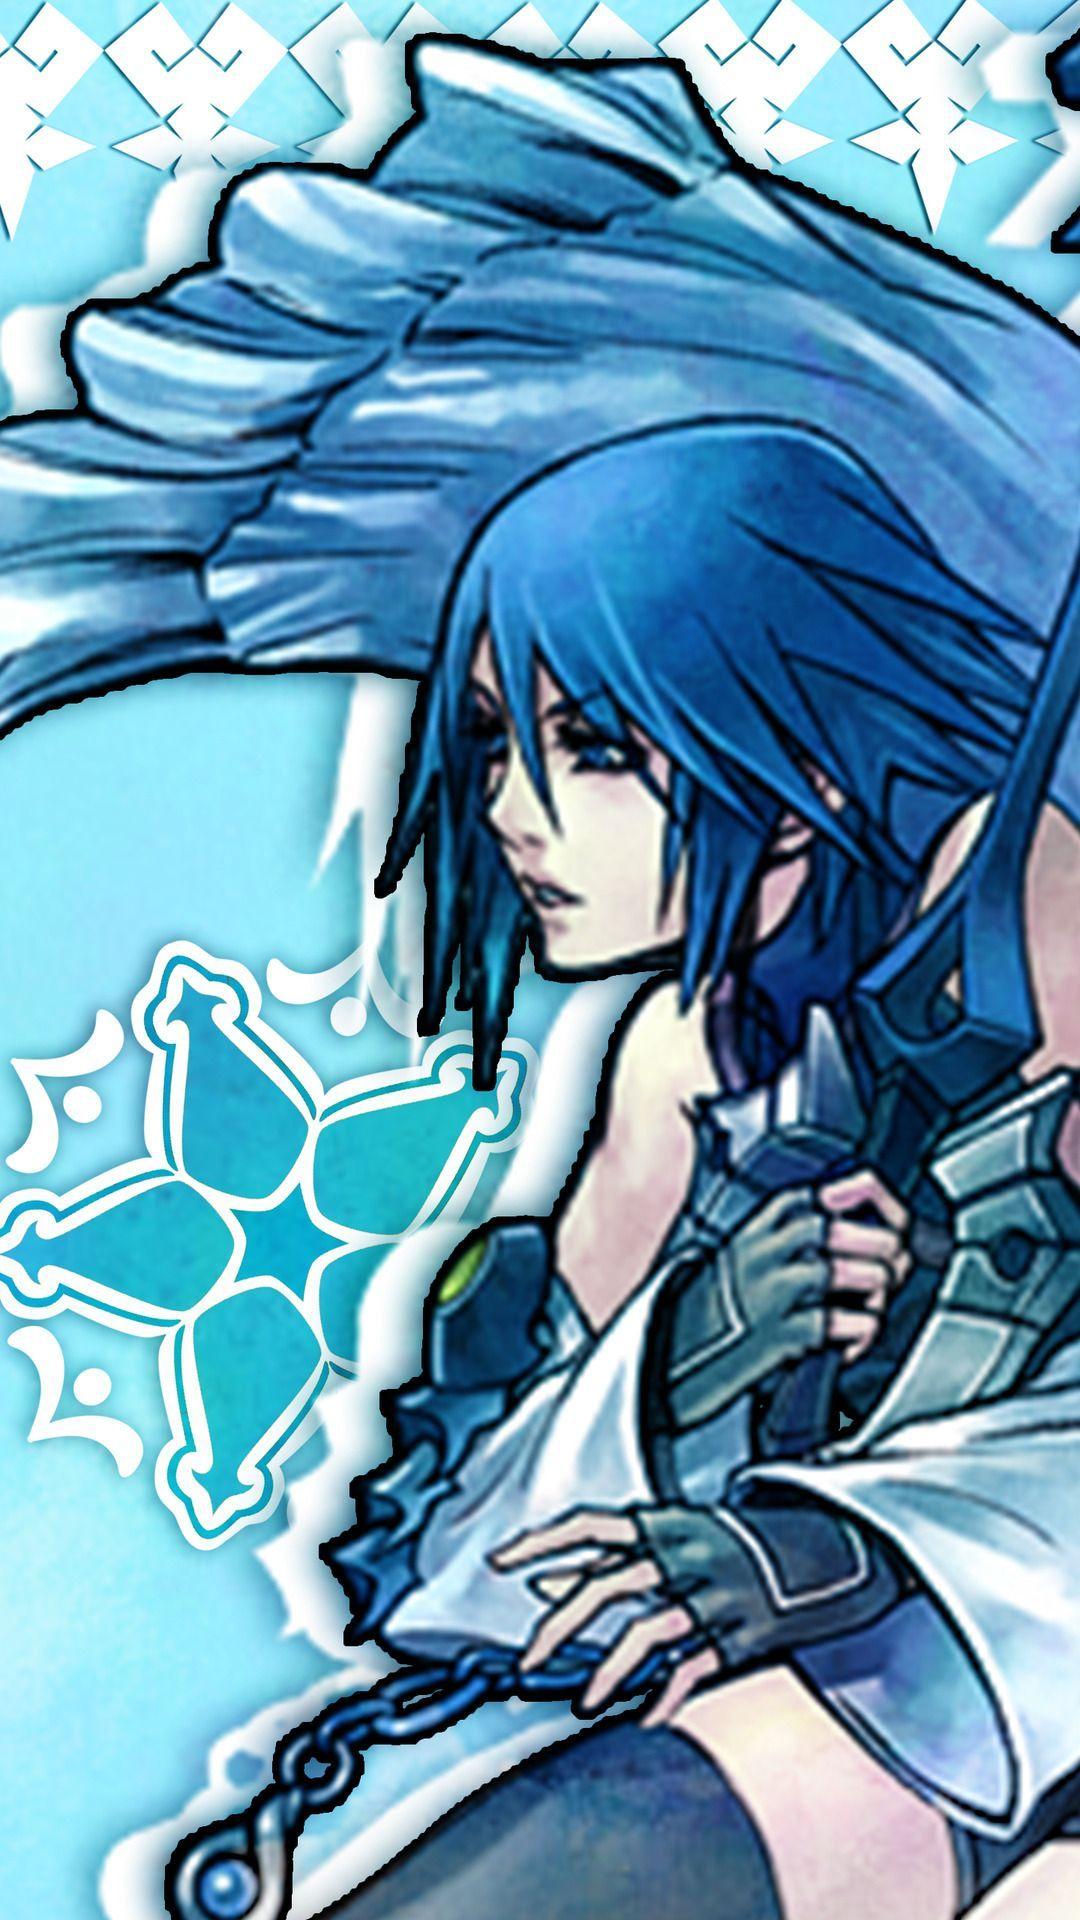 Kingdom Hearts Aqua Wallpapers Top Free Kingdom Hearts Aqua Backgrounds Wallpaperaccess 9116